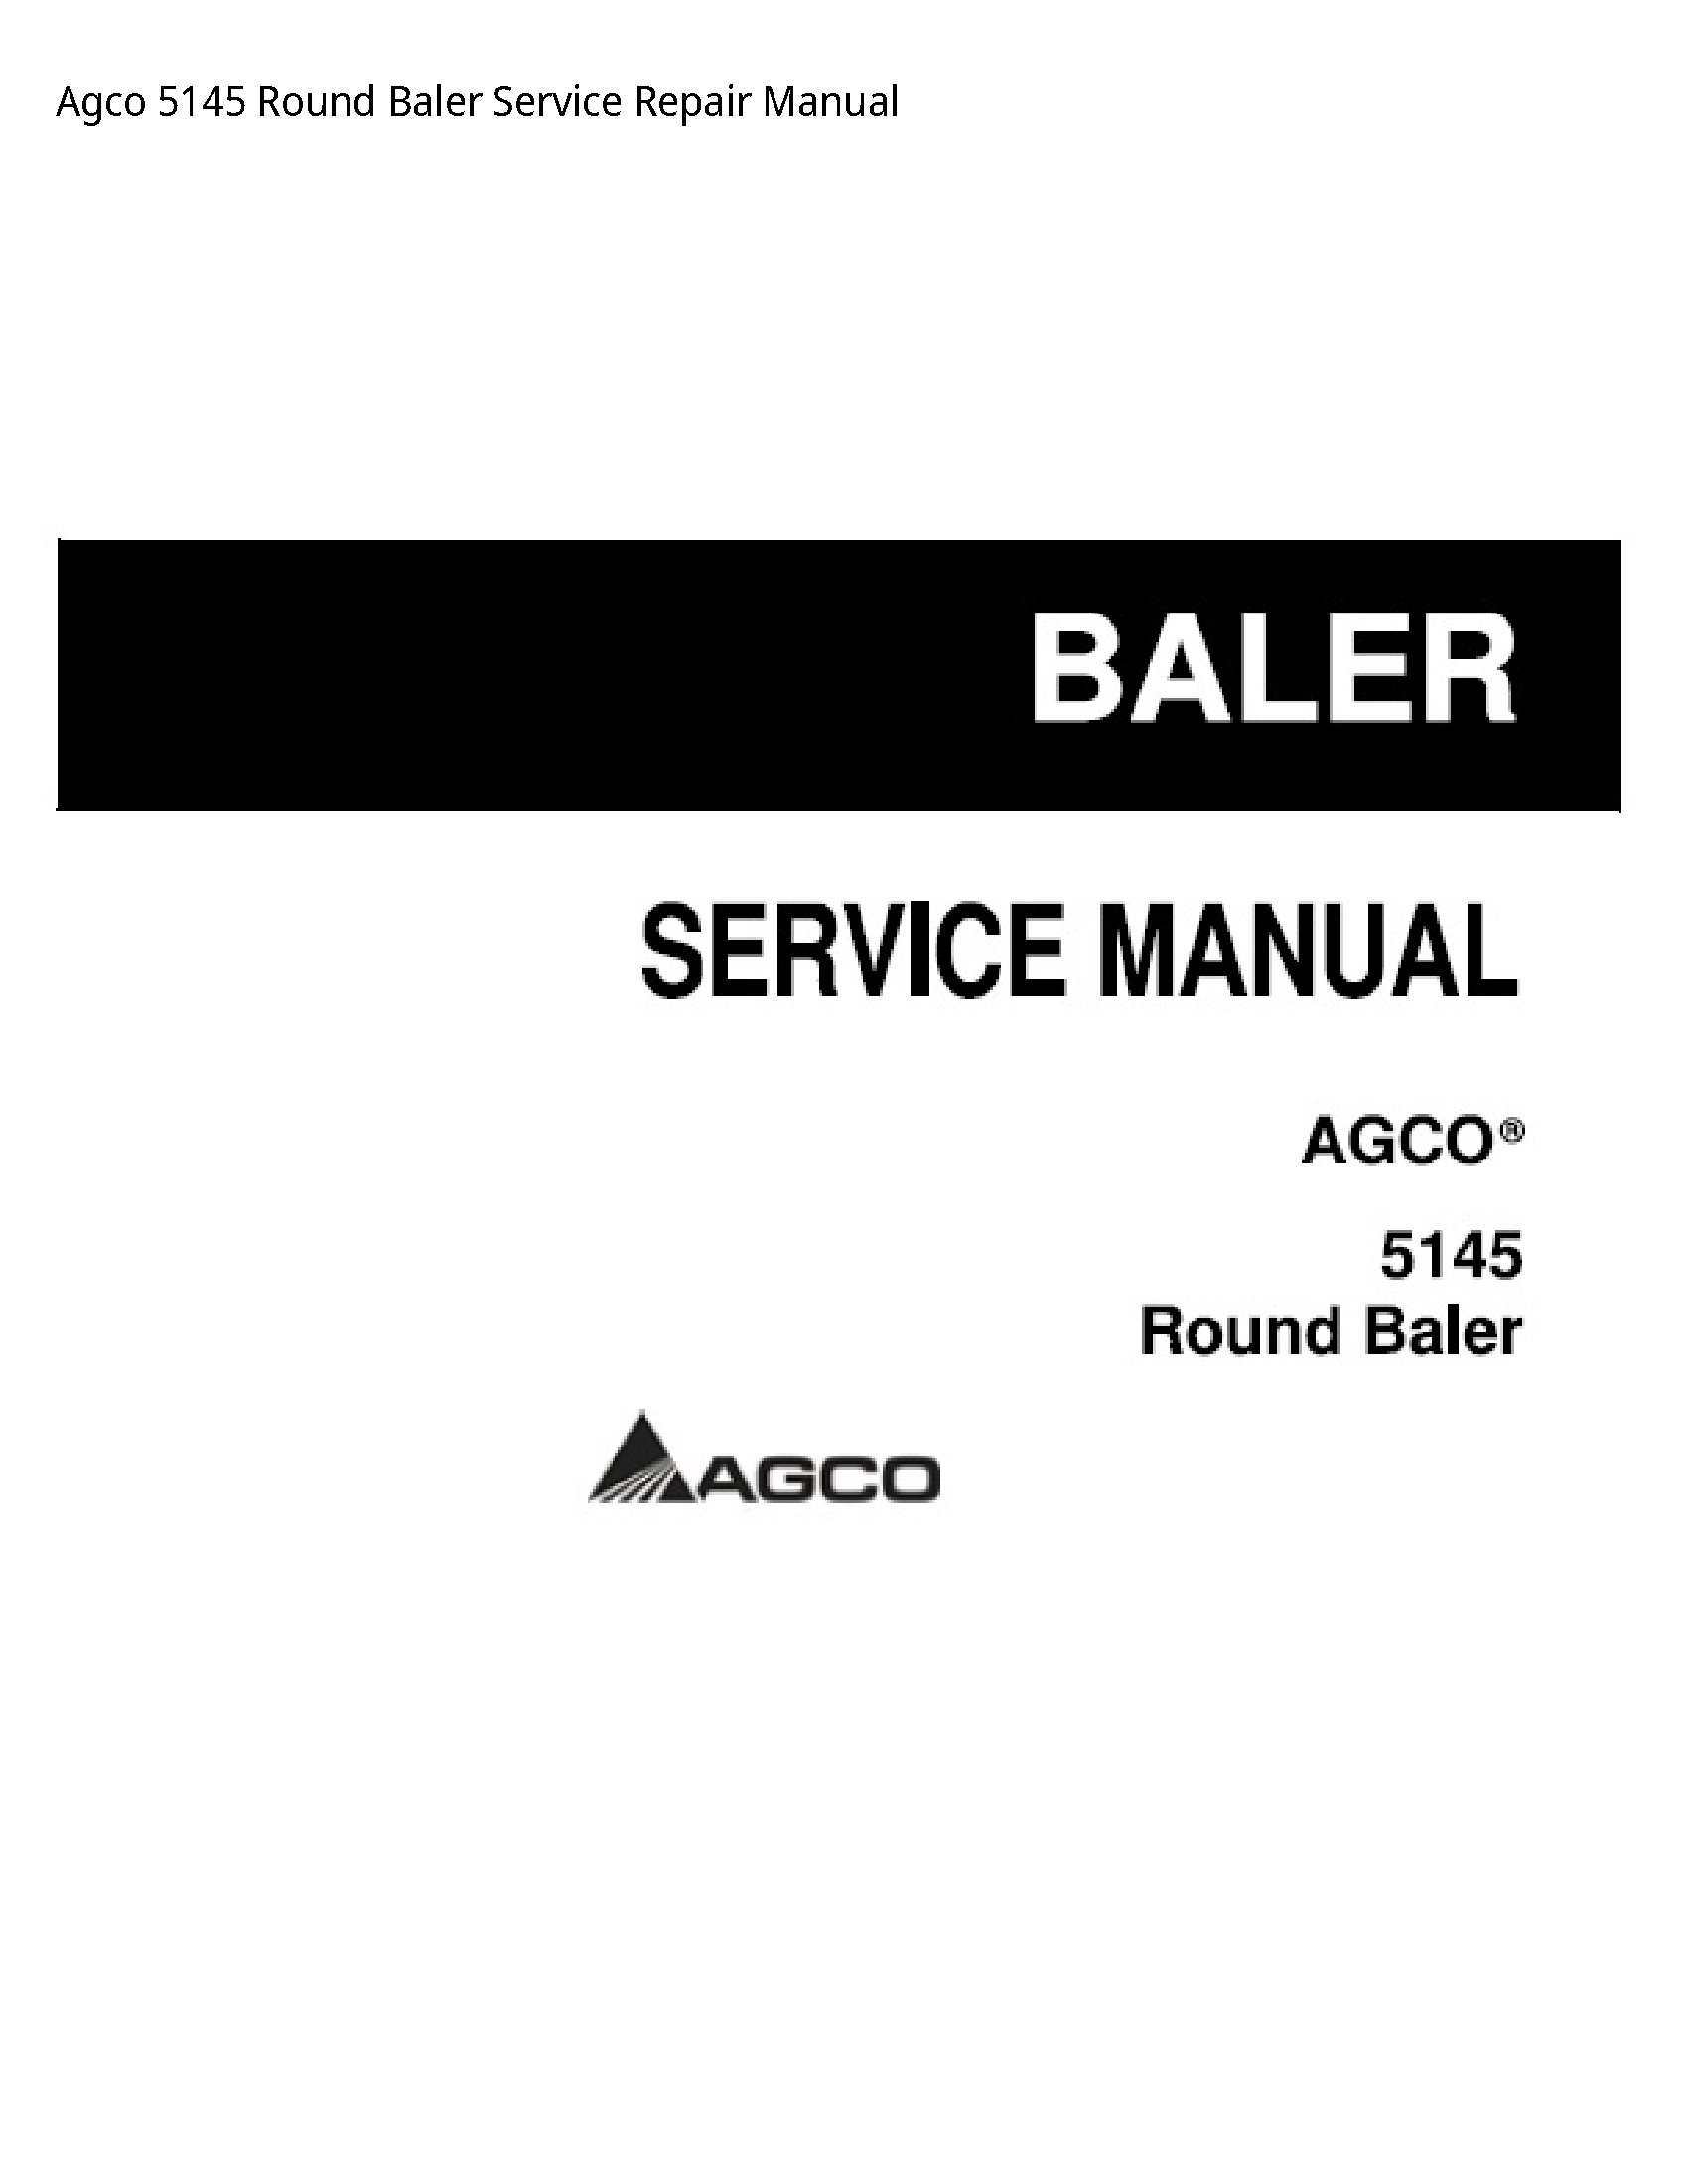 AGCO 5145 Round Baler manual